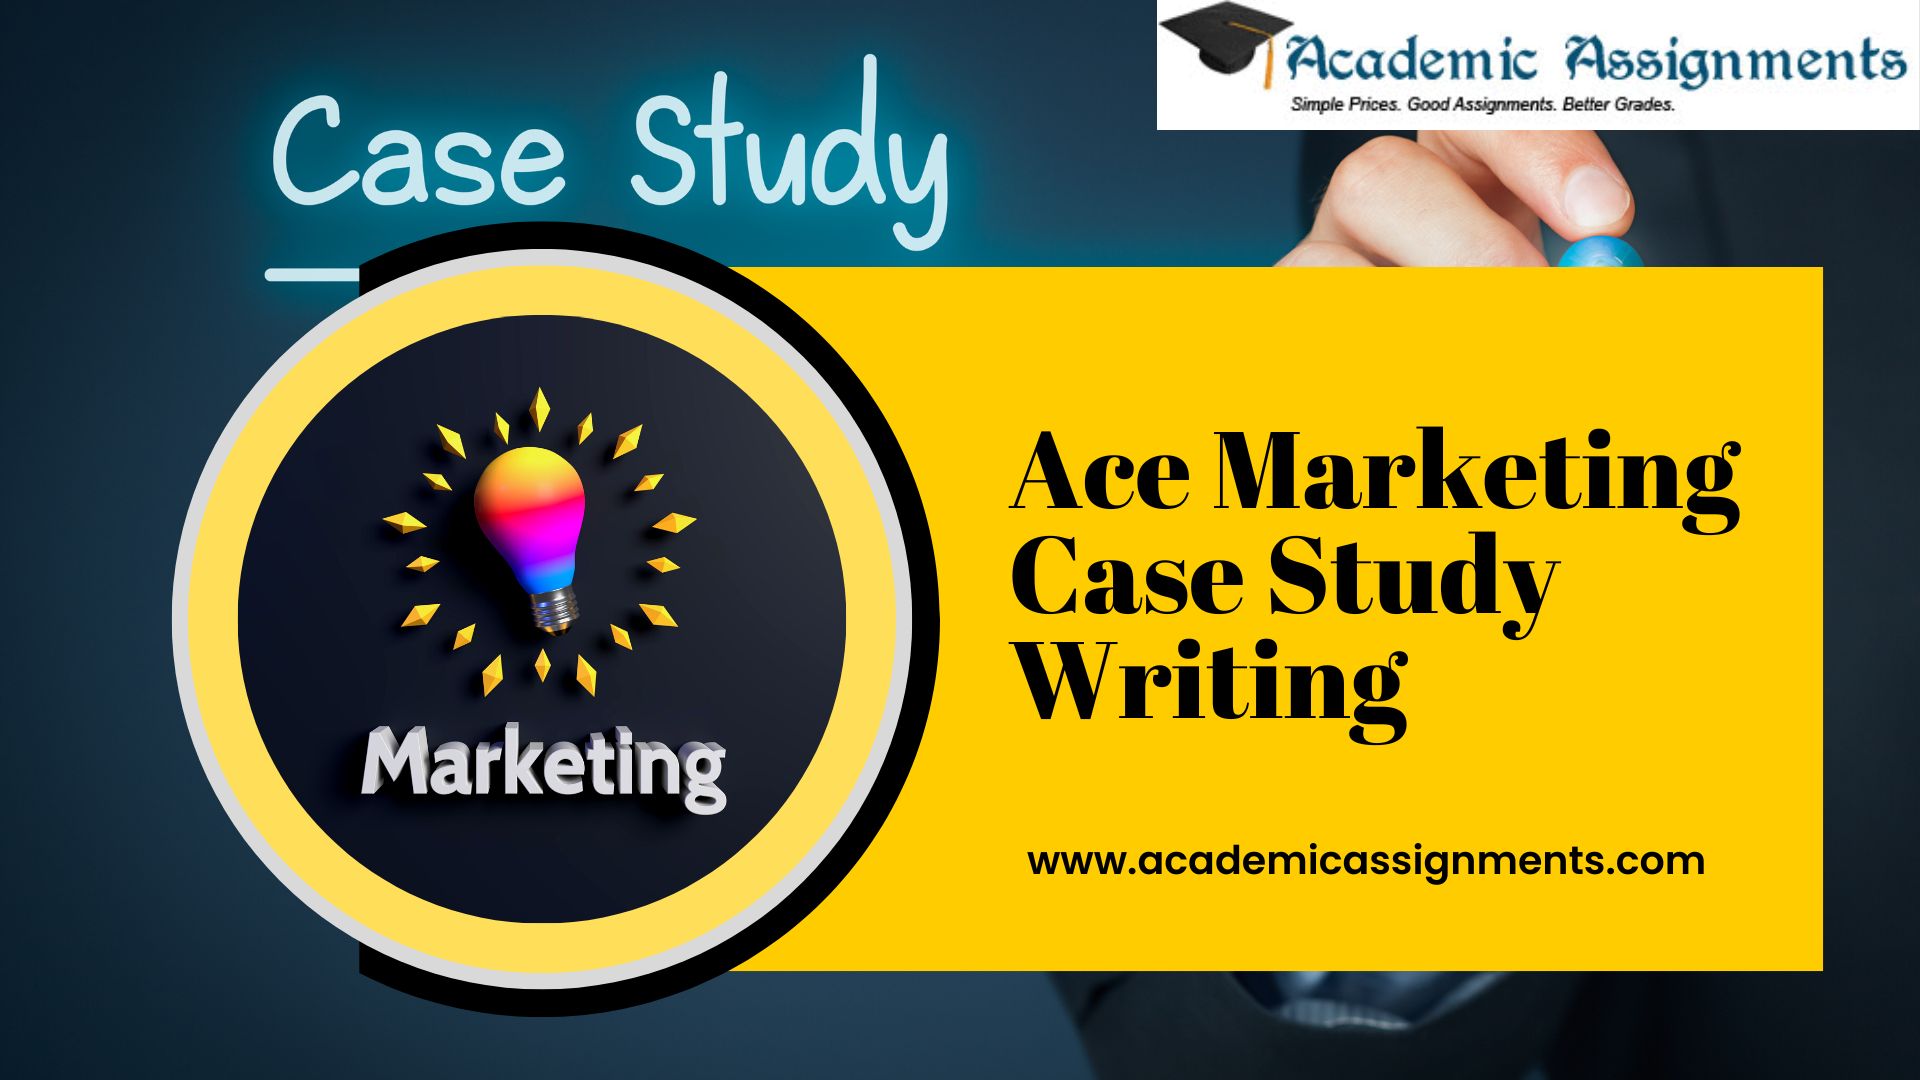 Ace Marketing Case Study Writing